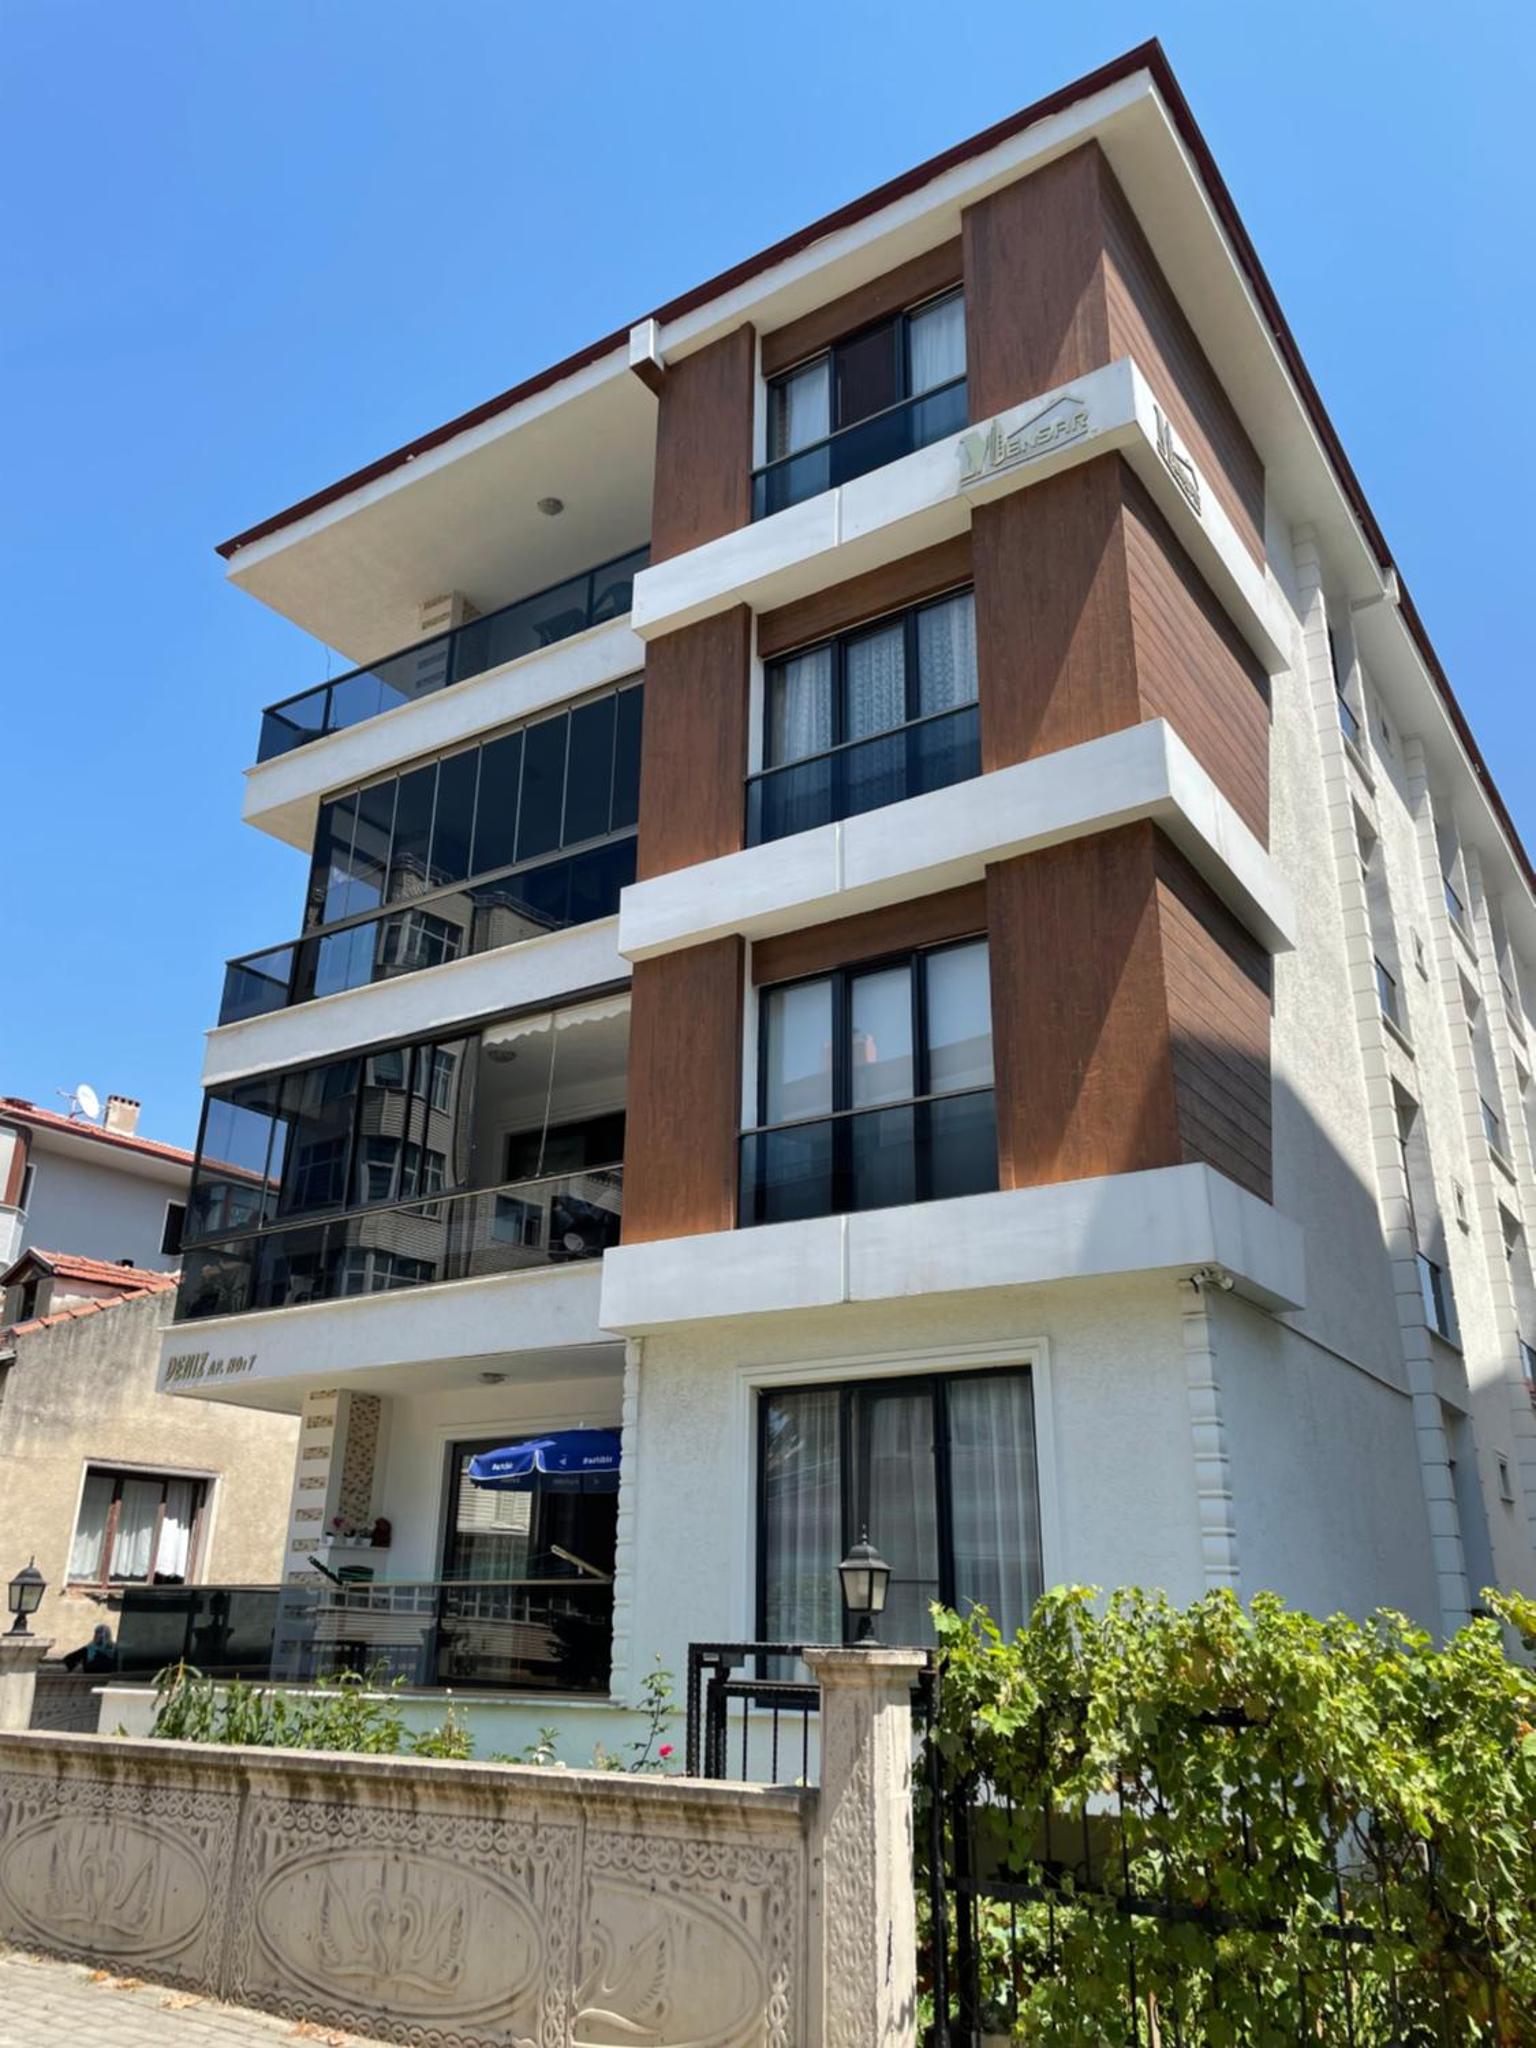 Deniz apartment